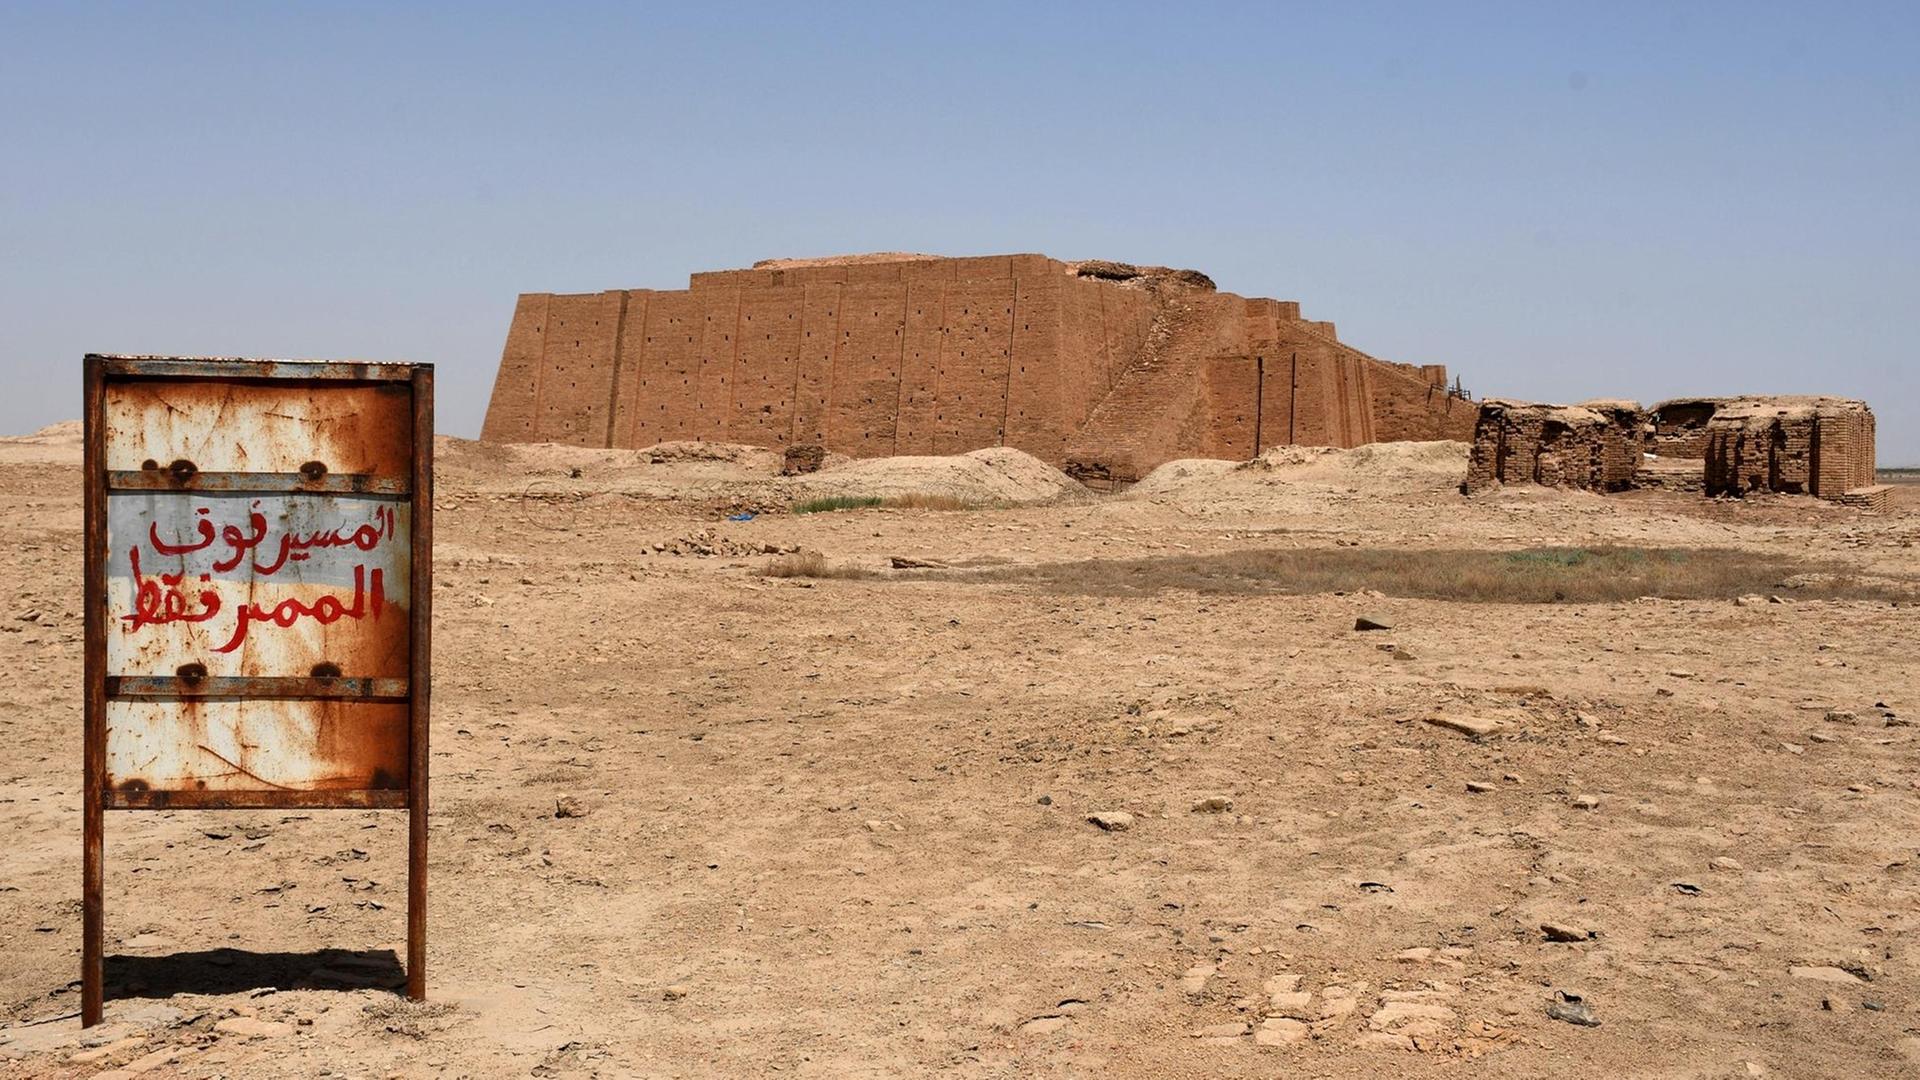 Eine Aufnahme des Großen Ziggurat Tempels in der Dhi-Qar-Provinz im Süden Iraks. Errichtet von den Sumerern zu Ehren des Mondgottes Nanna in der Zeit um 2100 v. Chr. in der alten Sumererstadt Ur und der ältesten archäologischen Stätten des alten Mesopotamiens im Irak.